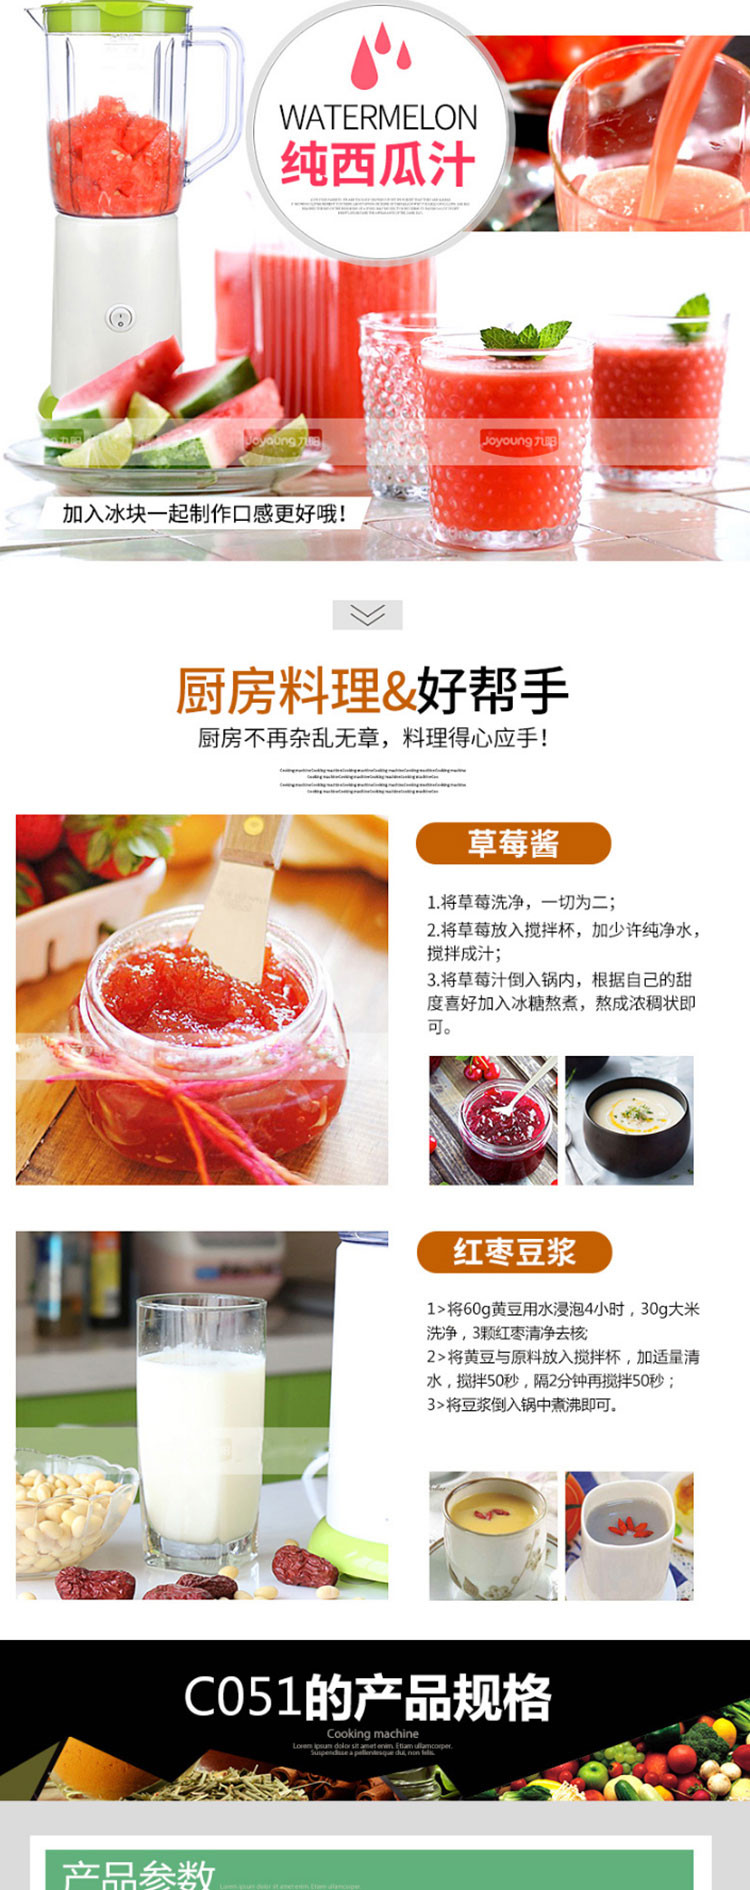 九阳 食品级材质家用料理机单杯单刀 JYL-C051